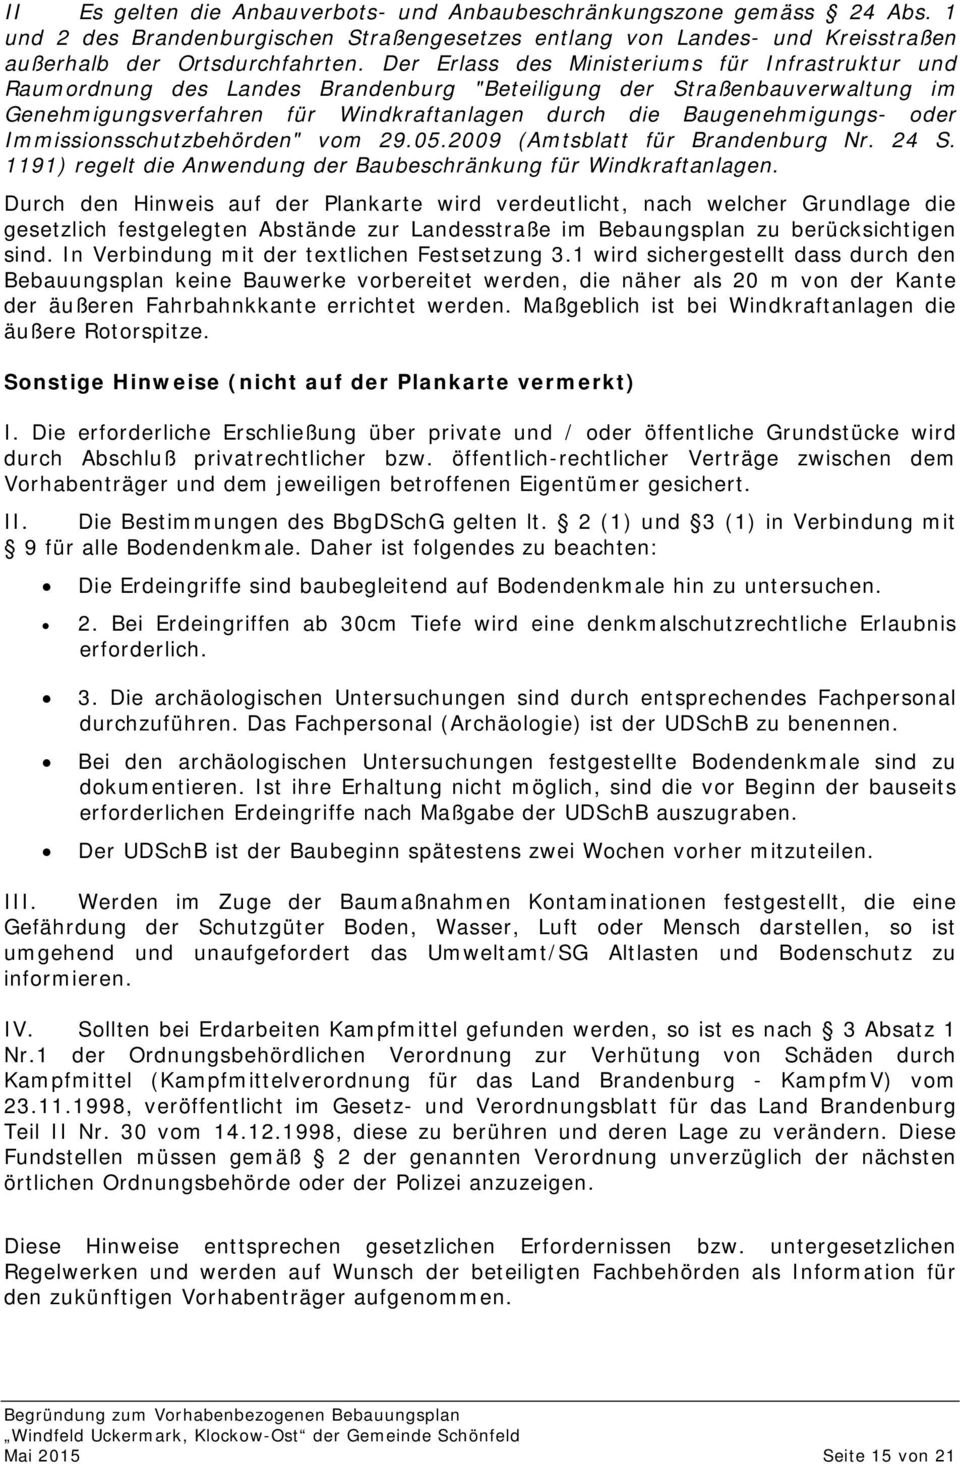 oder Immissionsschutzbehörden" vom 29.05.2009 (Amtsblatt für Brandenburg Nr. 24 S. 1191) regelt die Anwendung der Baubeschränkung für Windkraftanlagen.